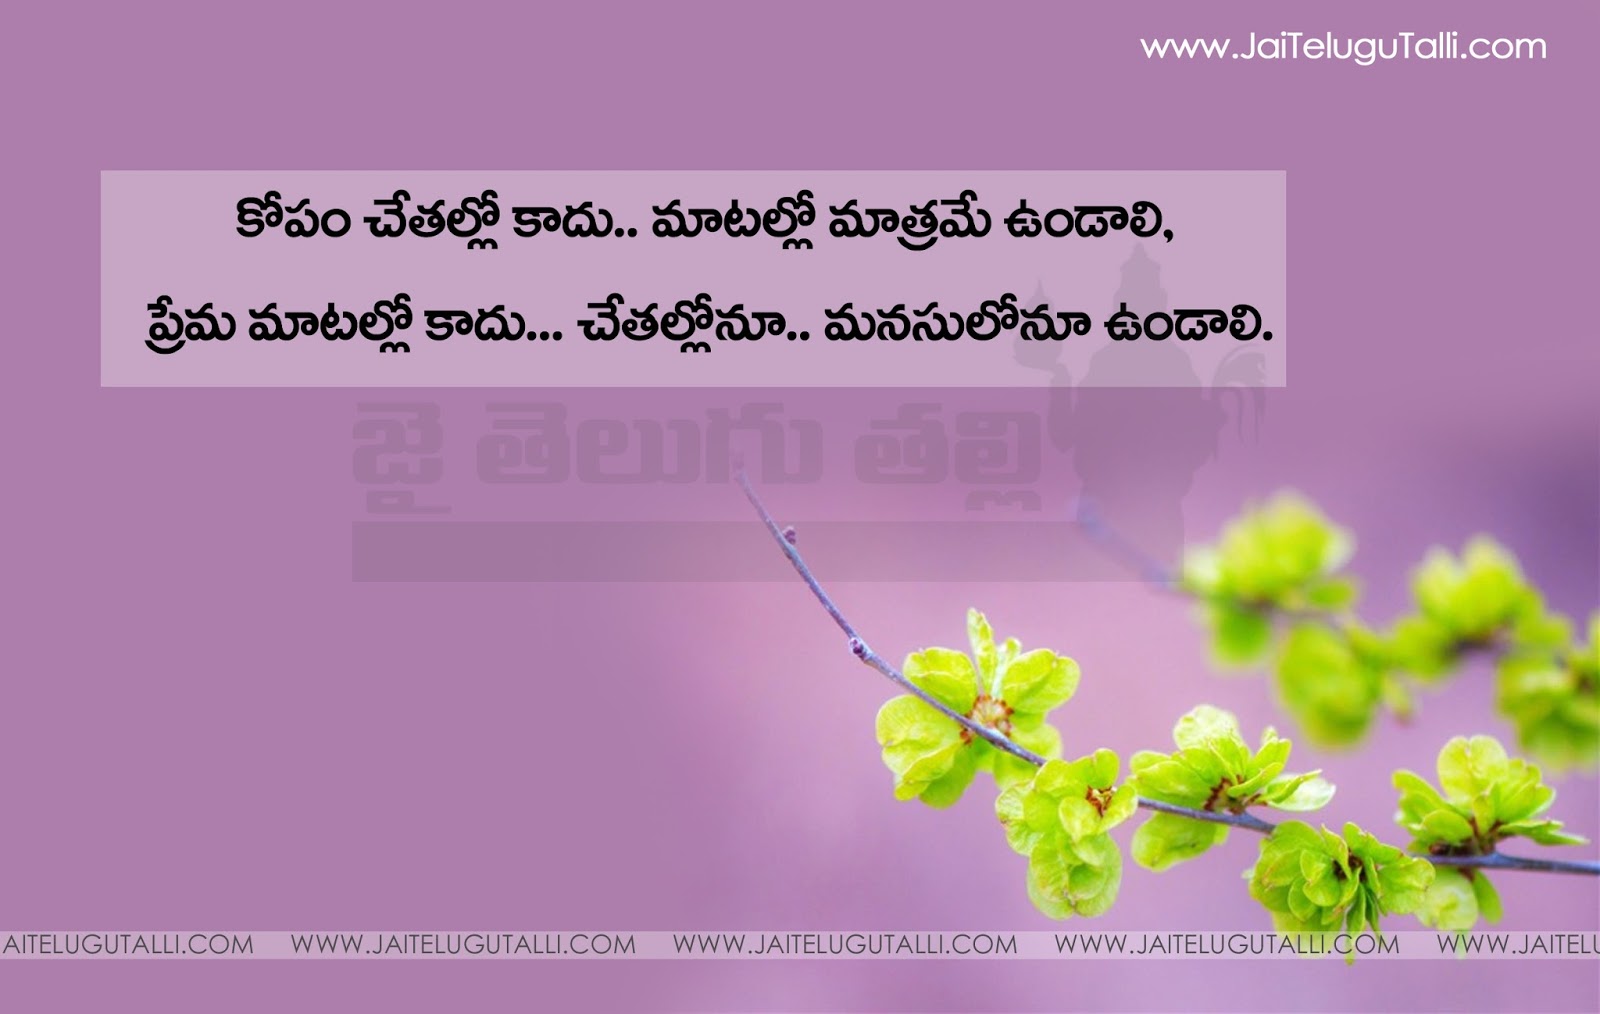 Telugu Manchi maatalu Nice Telugu Inspiring Life Quotations With Nice Awesome Telugu Motivational